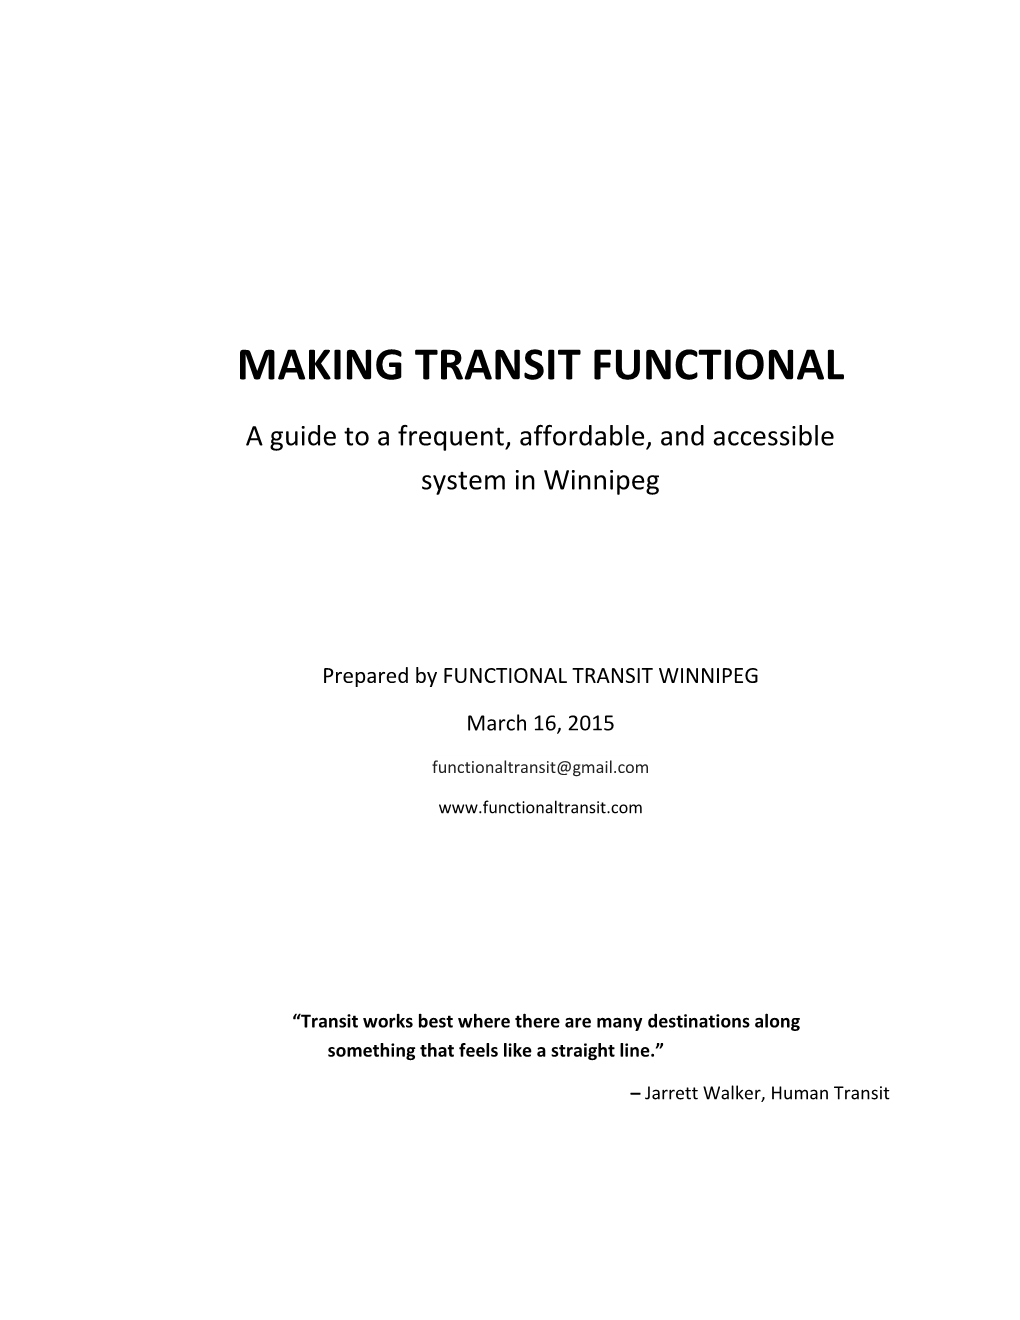 Making Transit Functional